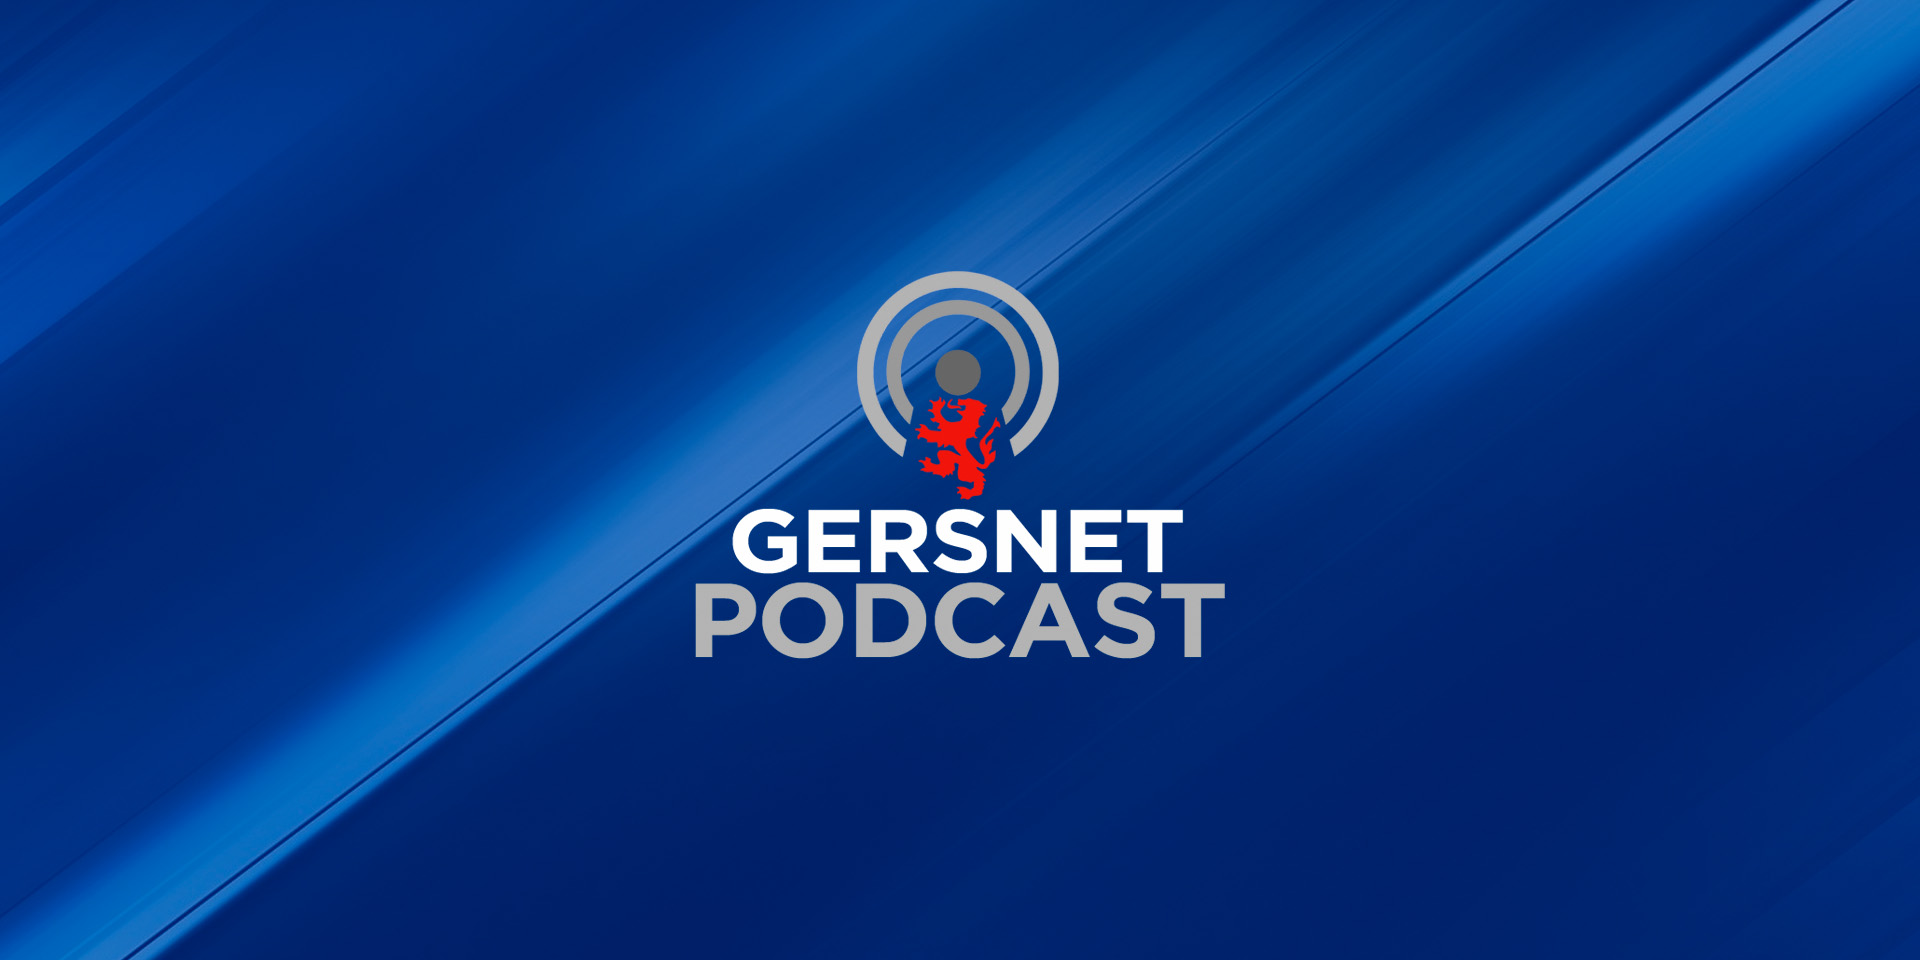 Gersnet Podcast 330 - Hearts Broken at Hampden